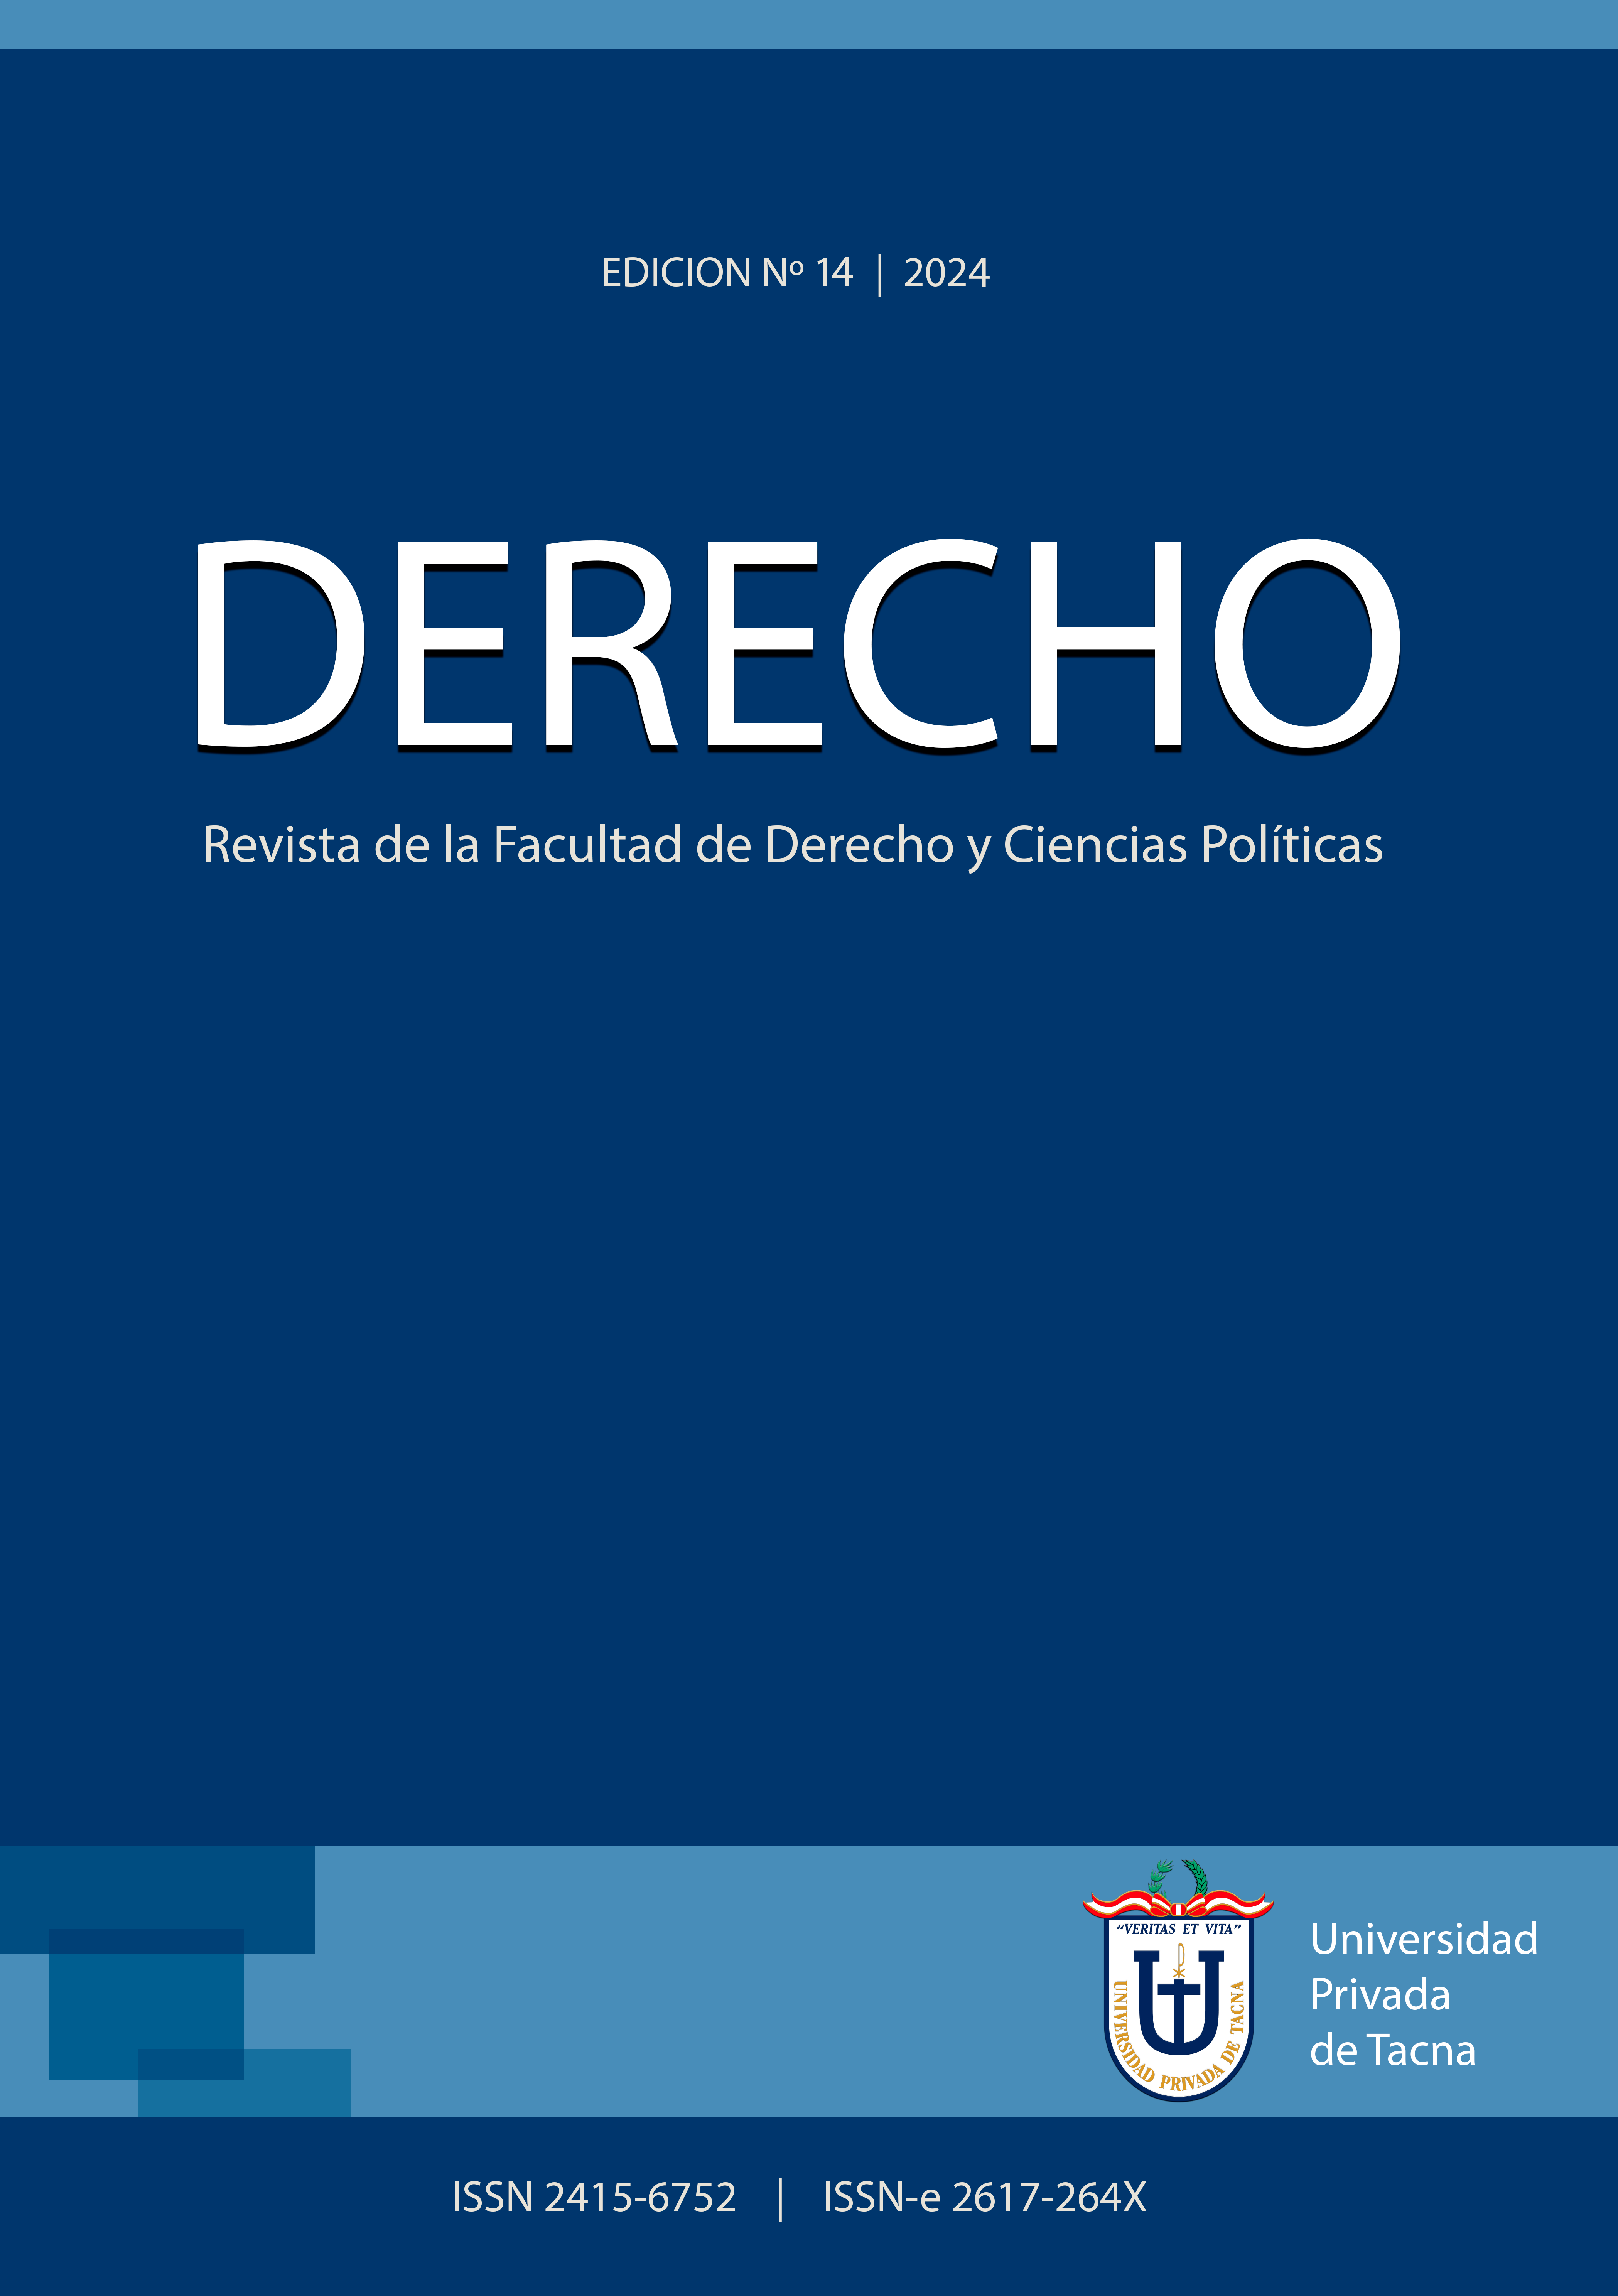 					View Vol. 14 No. 14 (2024): DERECHO: Revista de la Facultad de Derecho y Ciencias Políticas
				